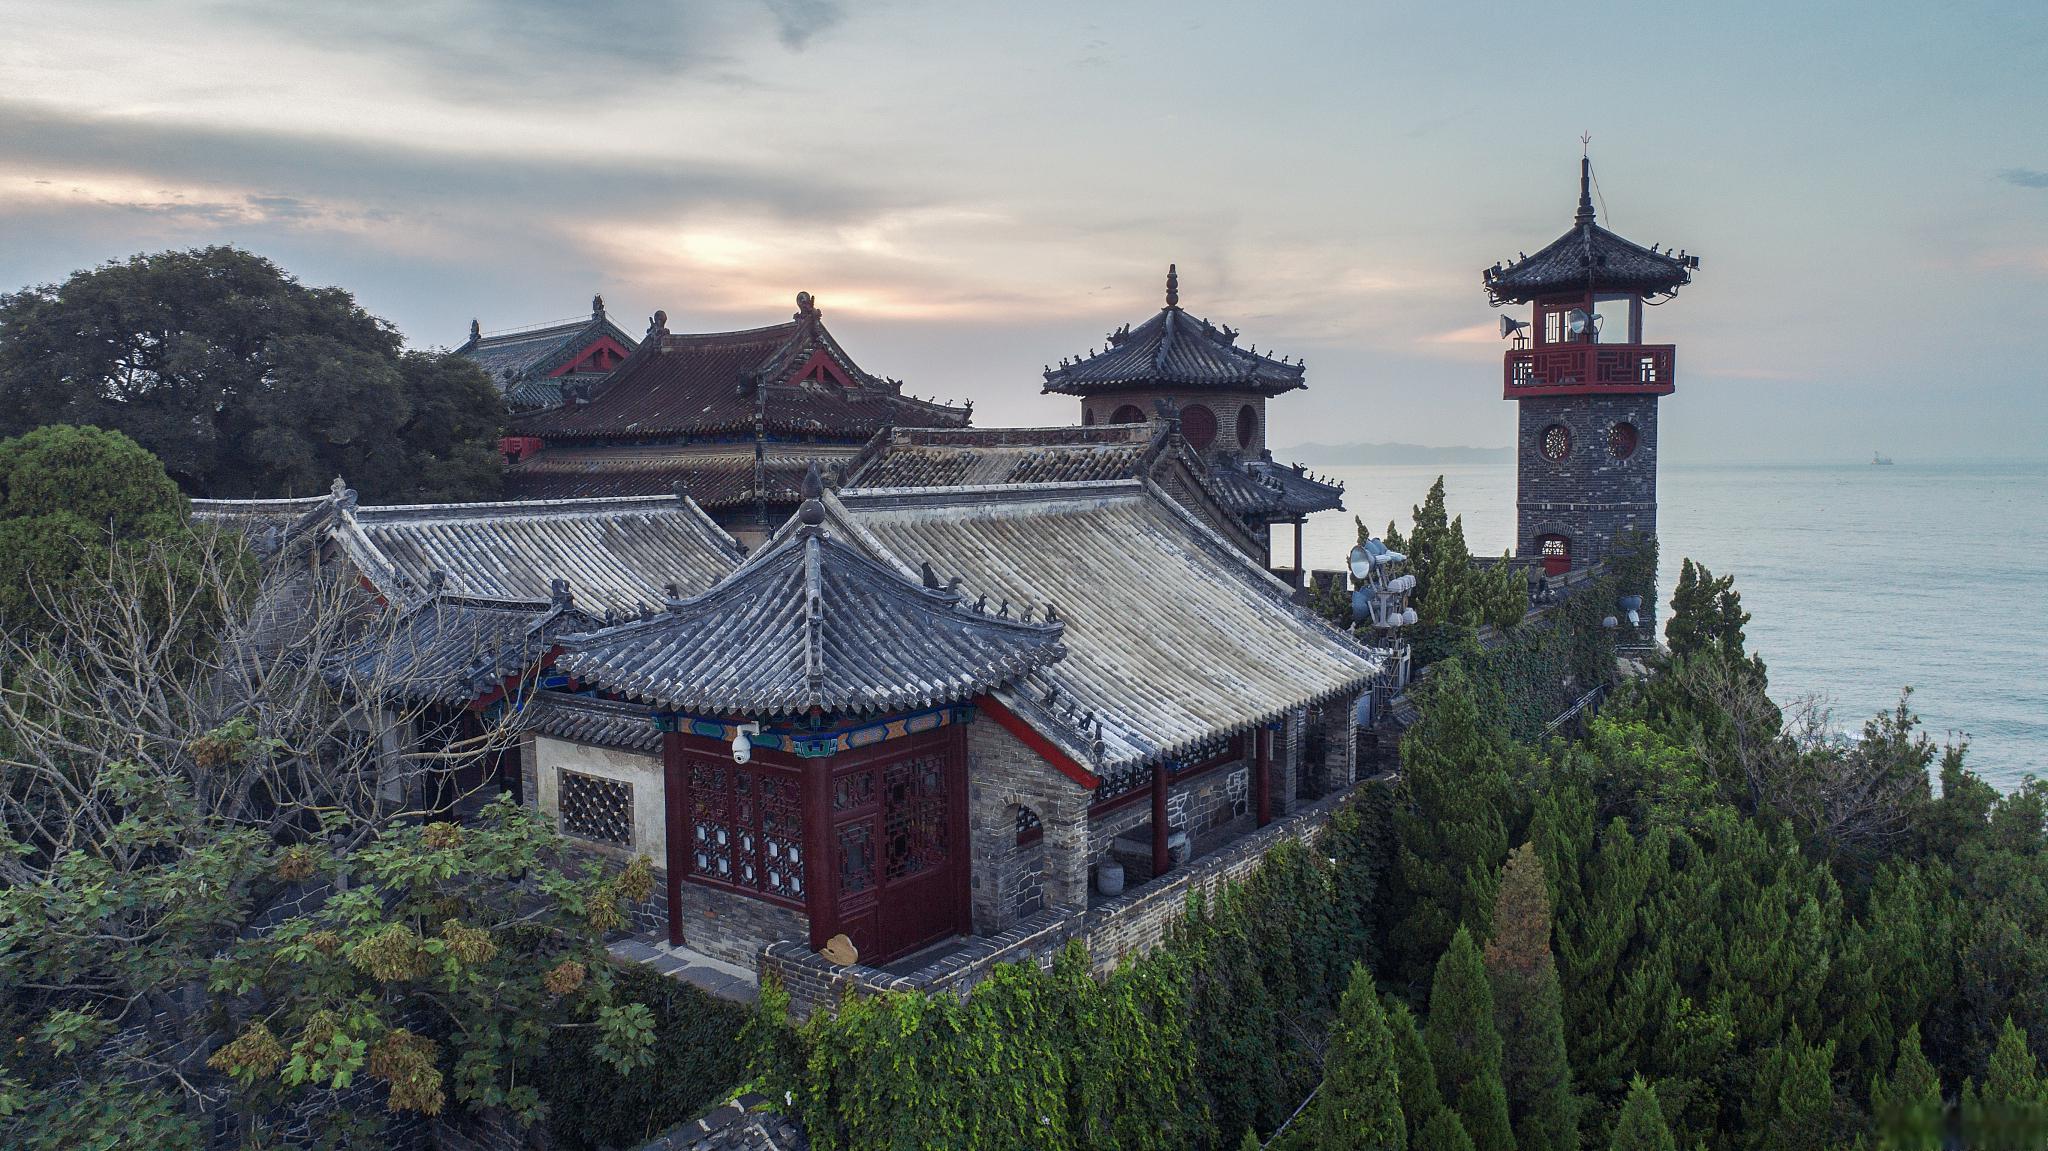 蓬莱阁位于中国山东省烟台市蓬莱市,是中国著名的旅游景点之一,以历史